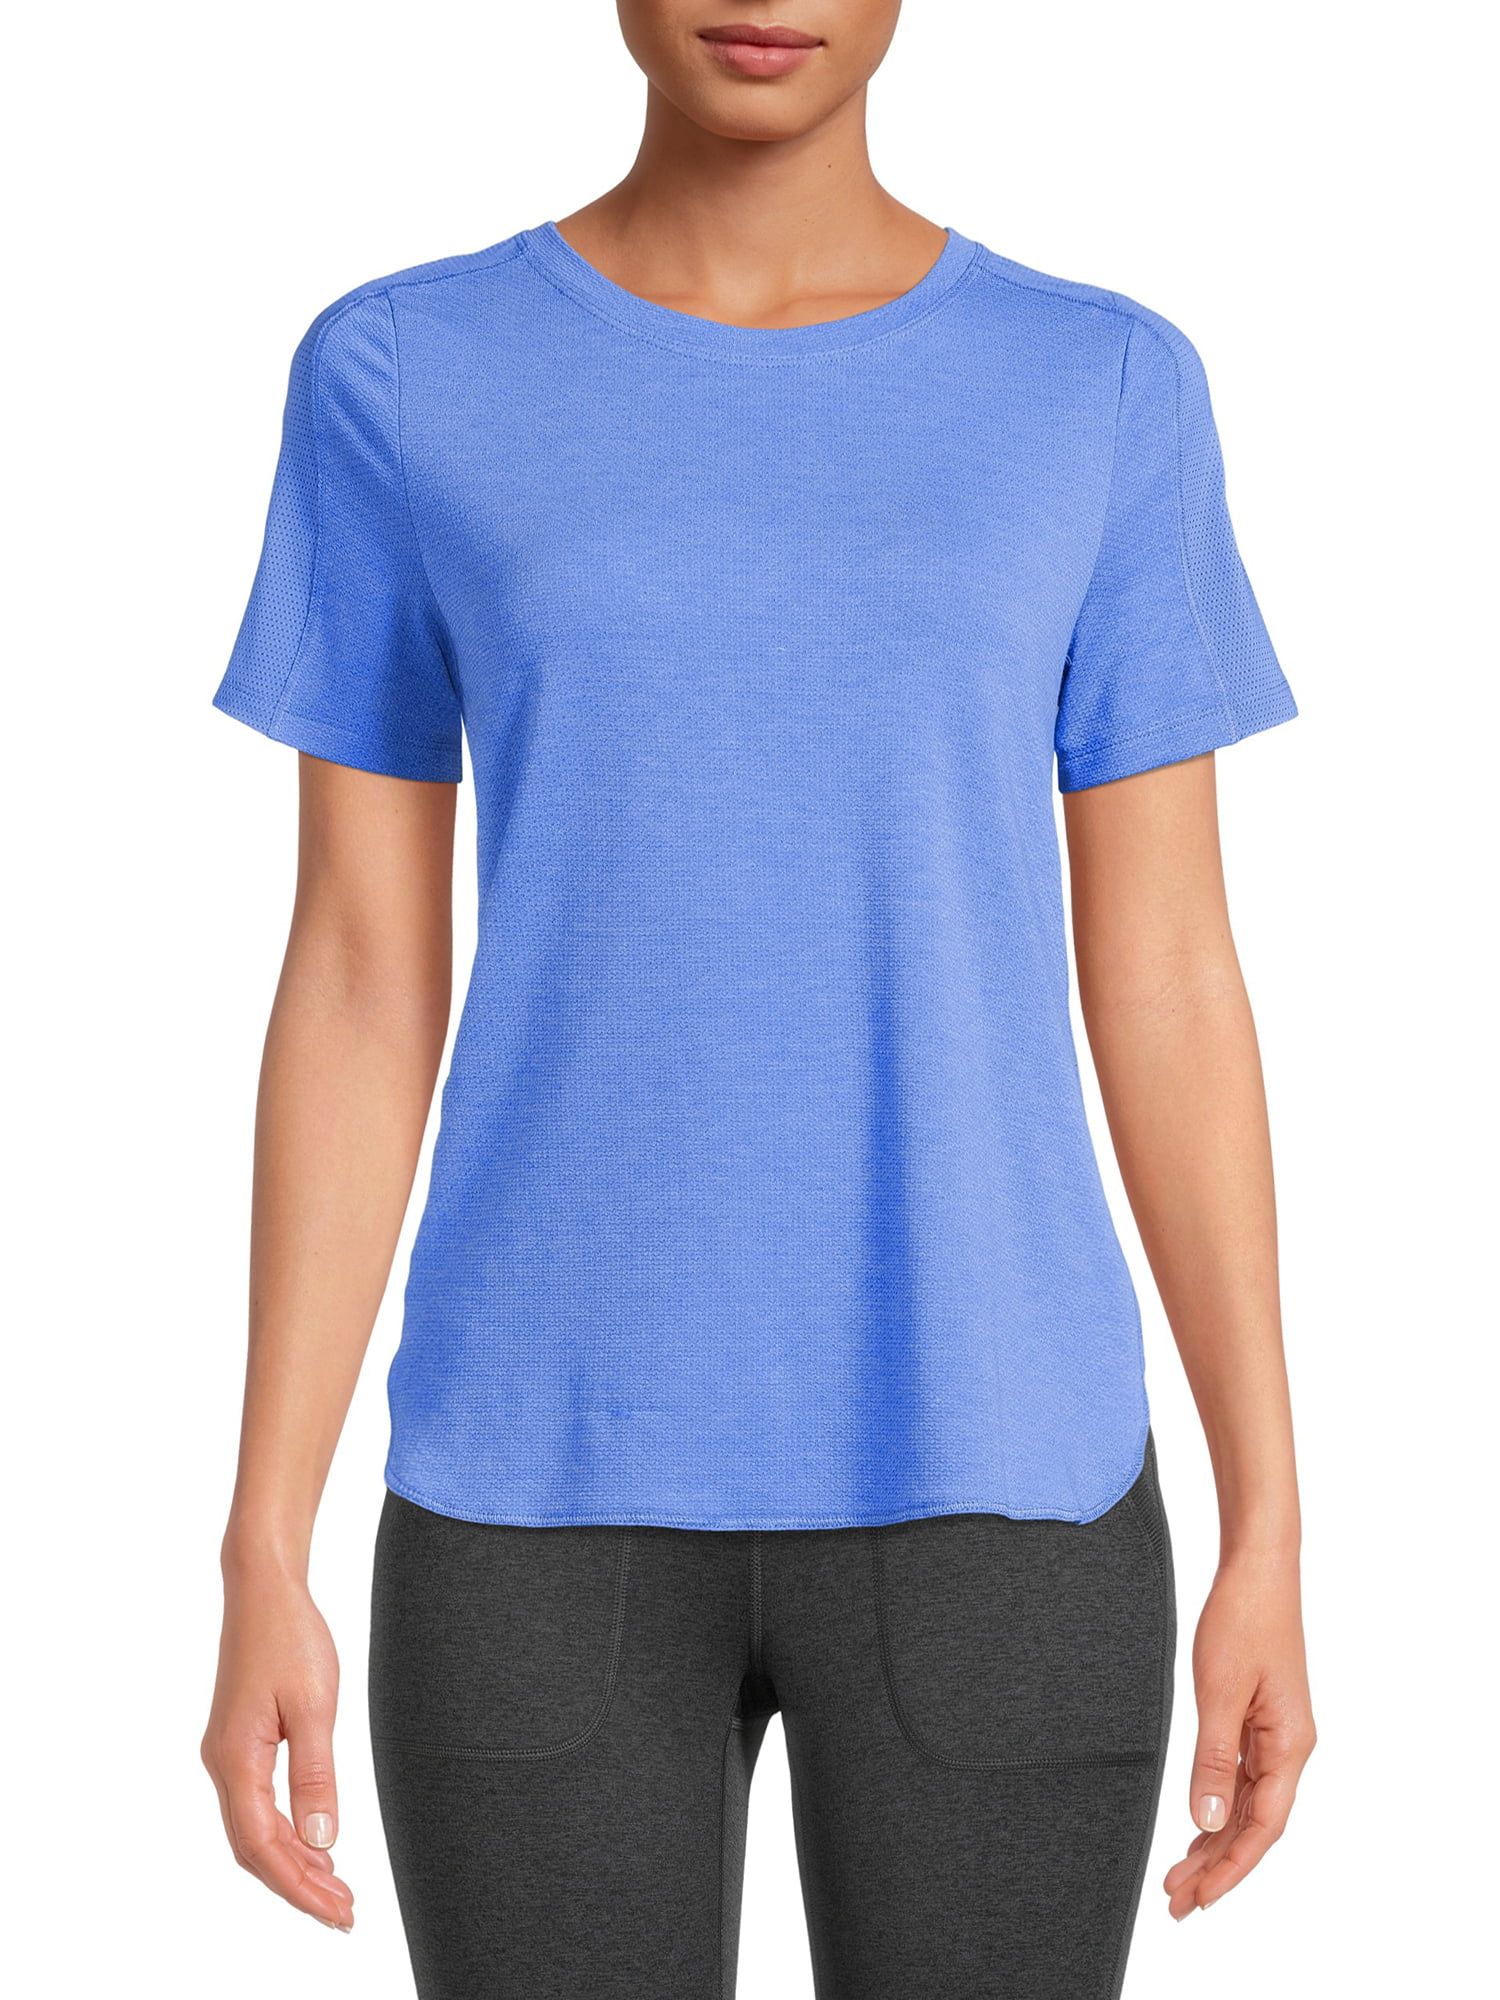 Avia Women's Short Sleeve Performance T-Shirt - Walmart.com | Walmart (US)